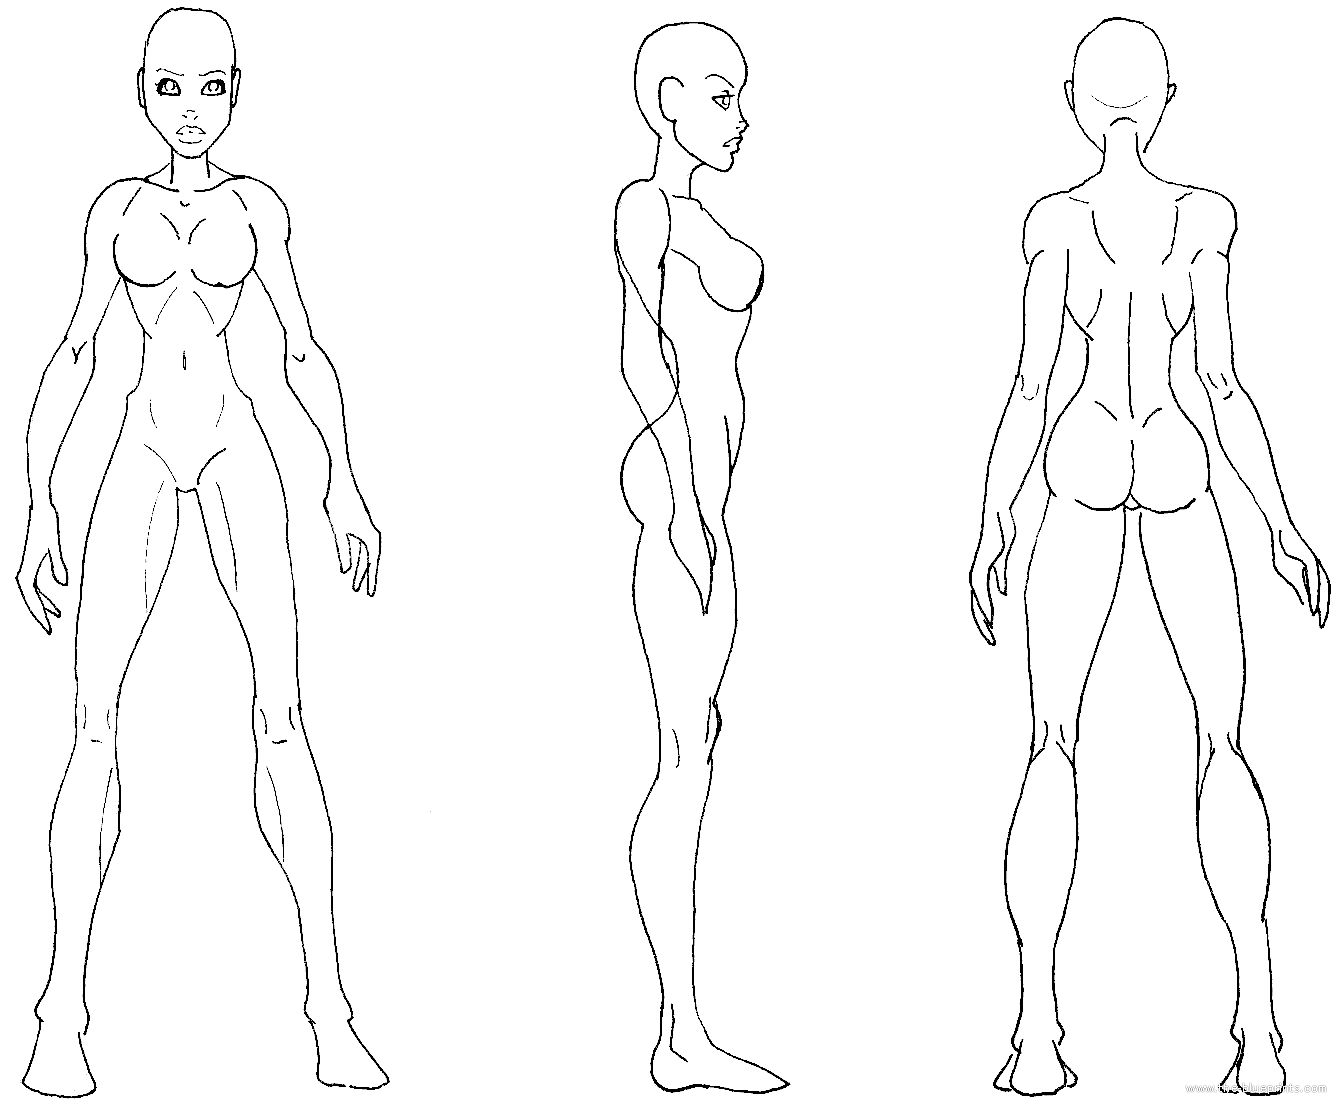 Профиль в полный рост. Человек в профиль референс в полный рост. Эскиз тела. Фигура человека для рисования. Фигура девушки рисунок.